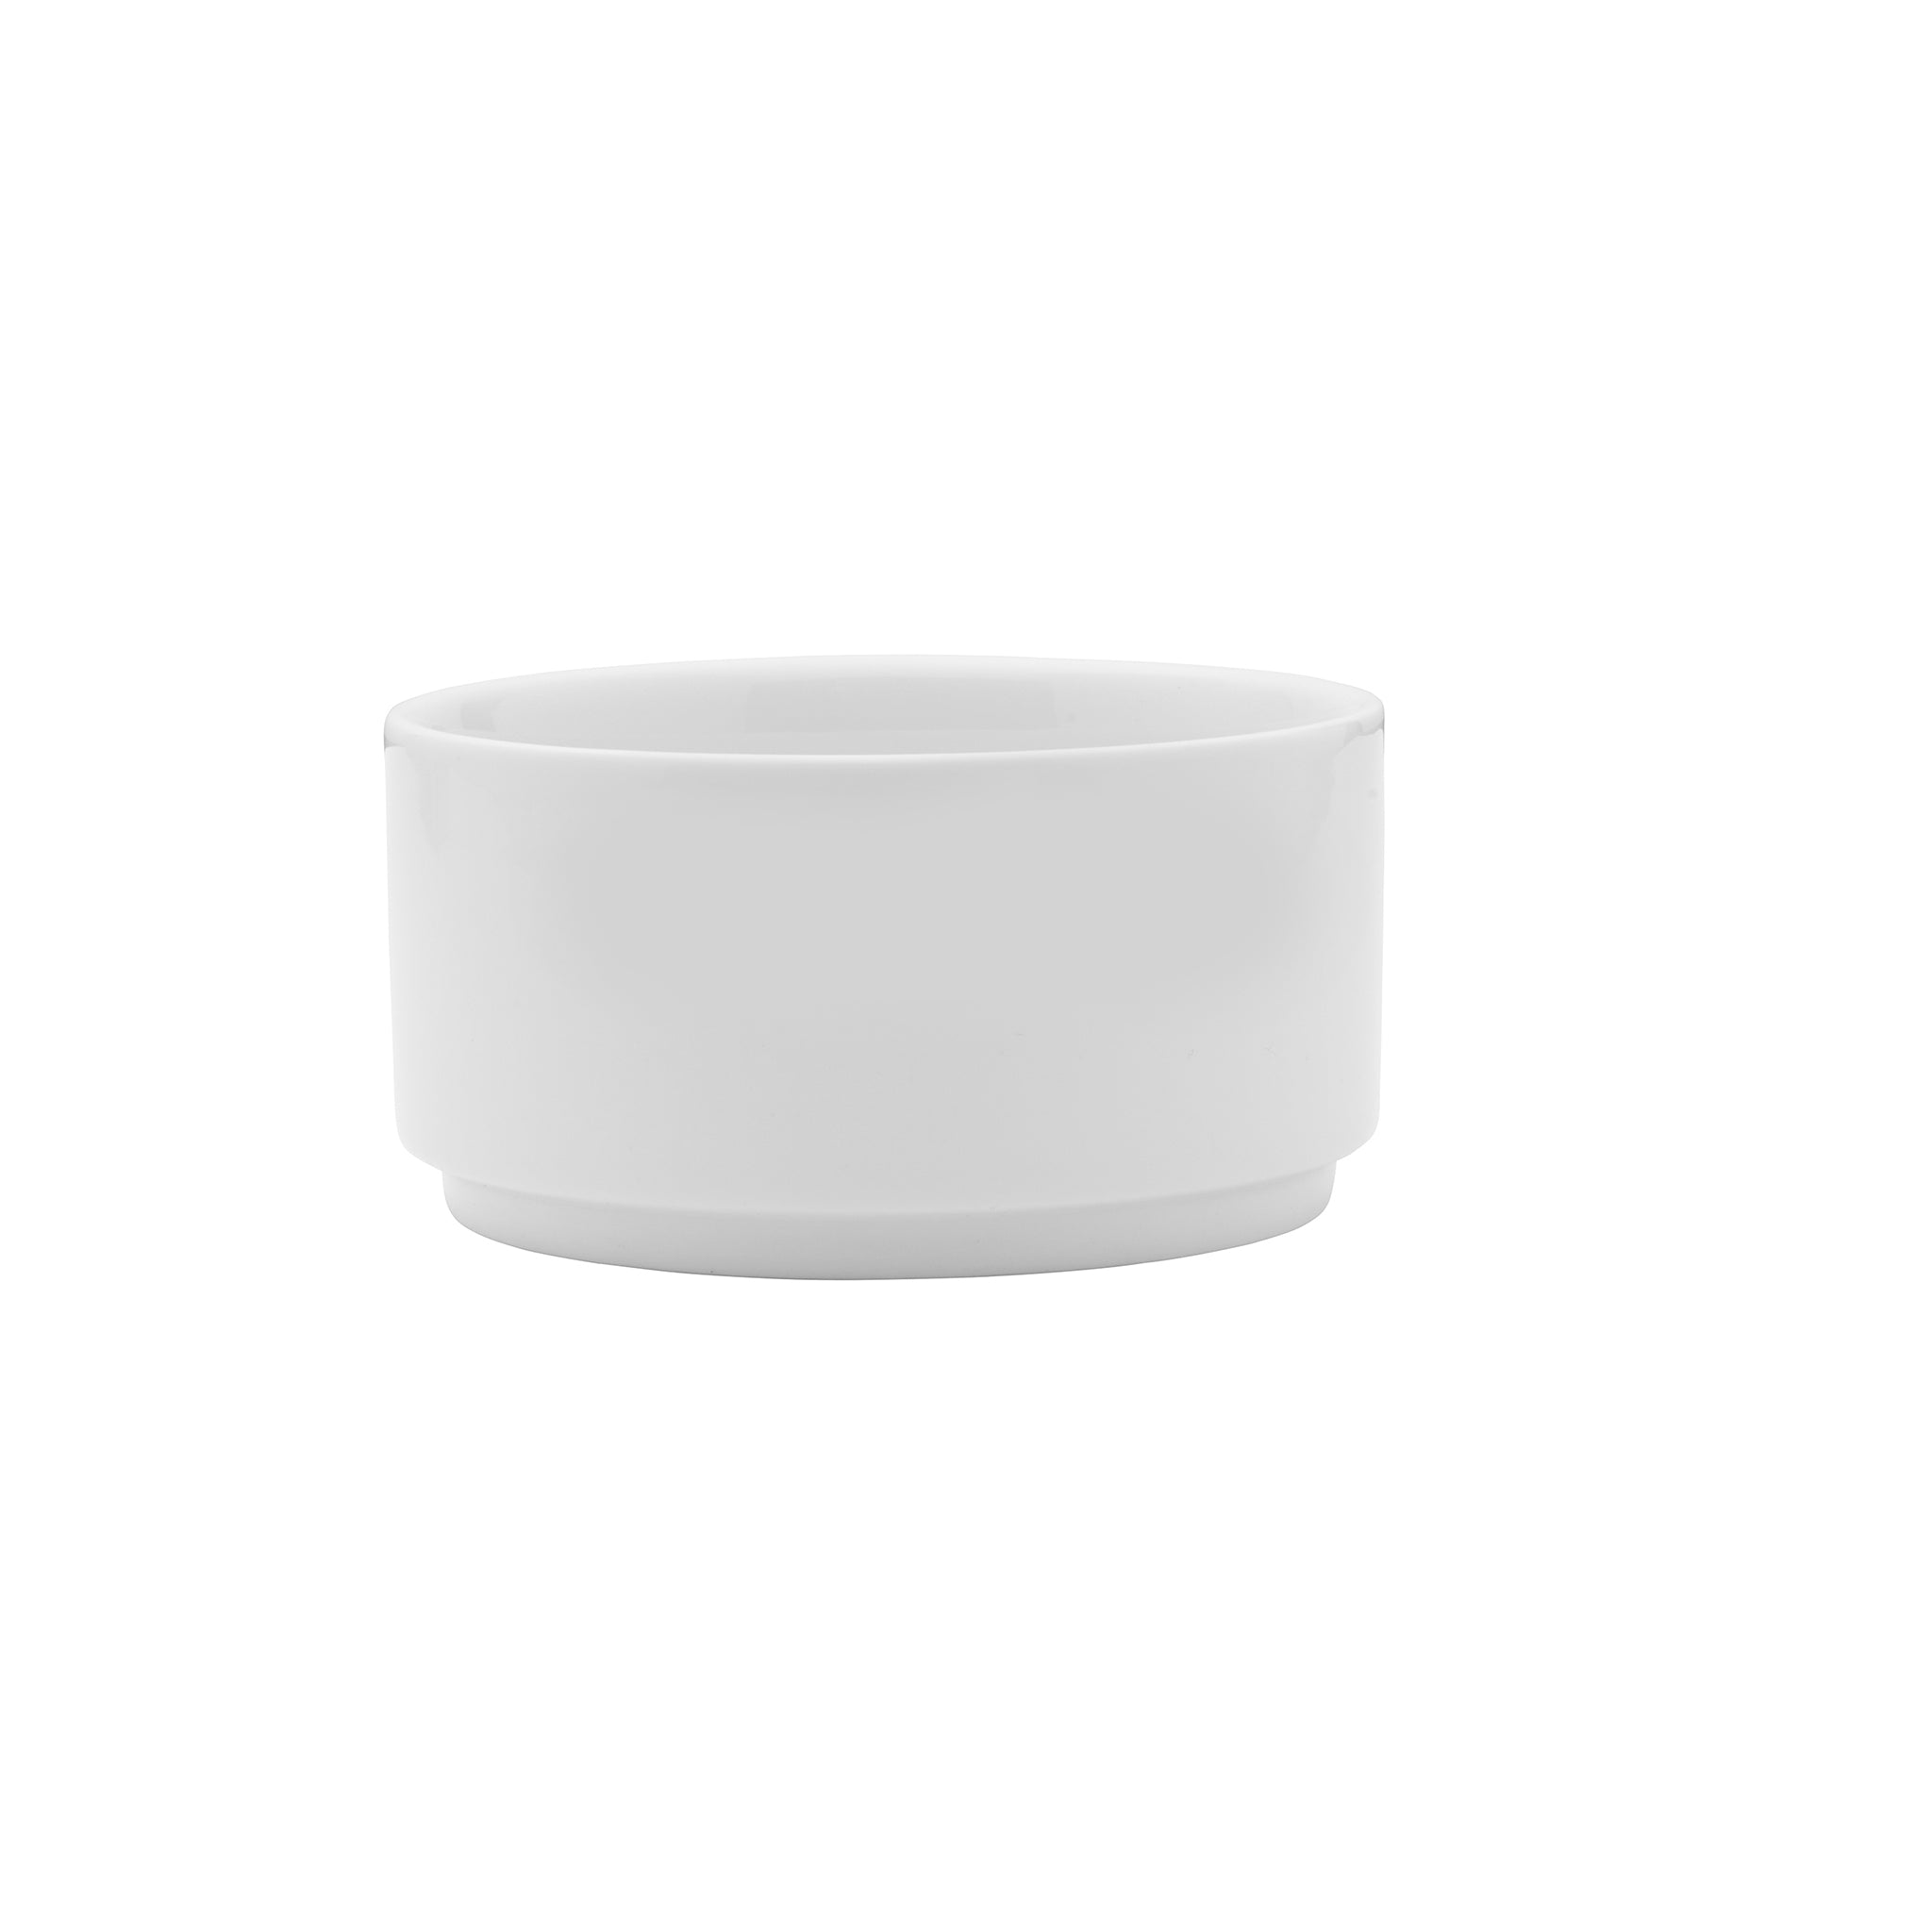 Galleria Porcelain Bowl 4" / 18oz White